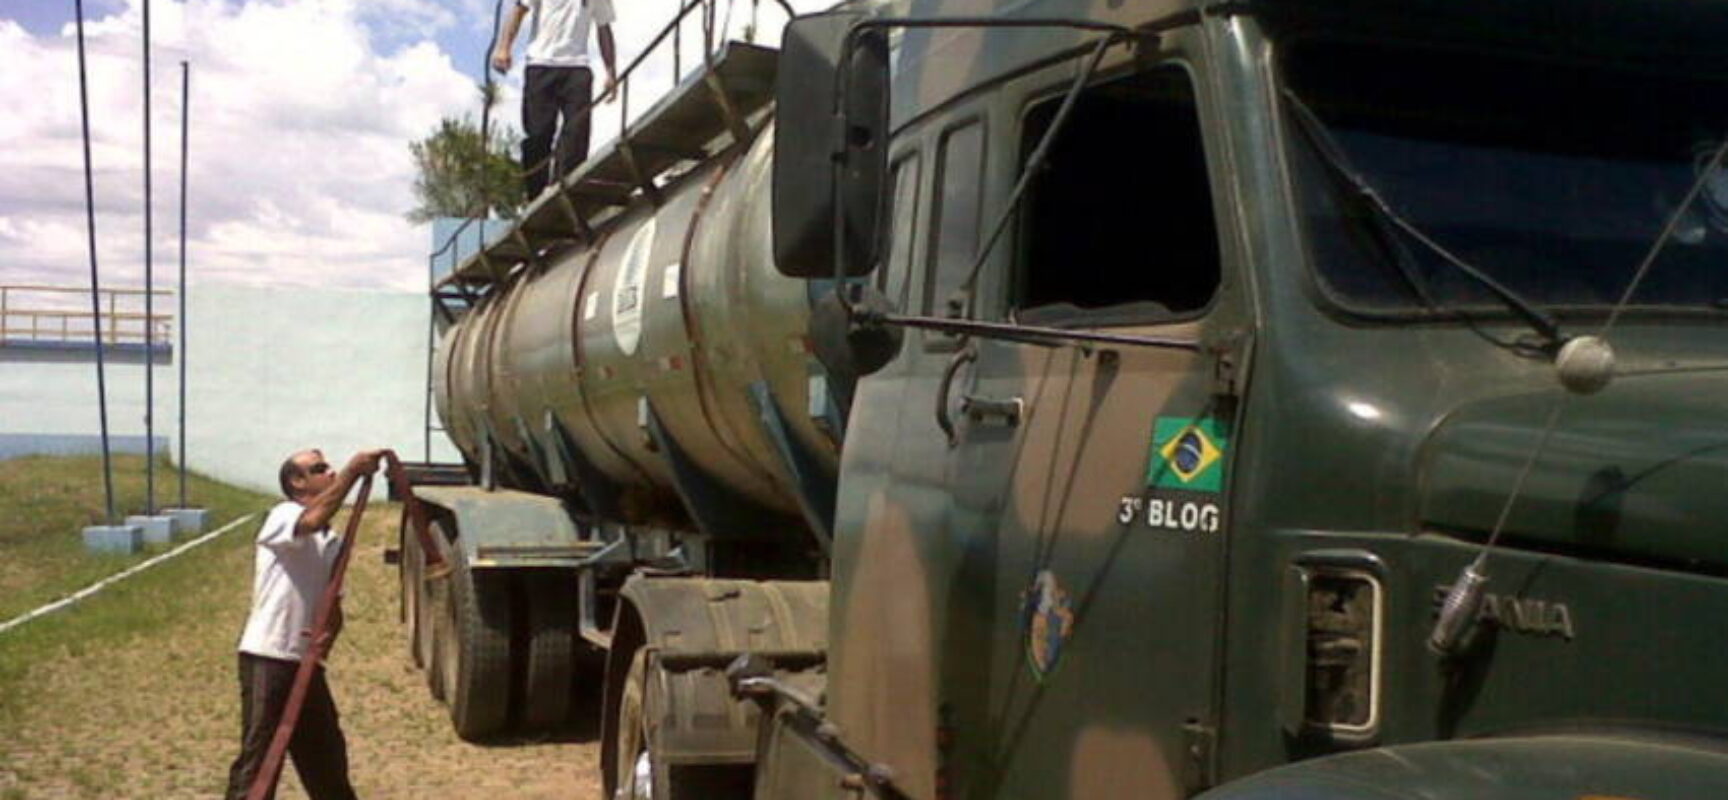 Exército suspende distribuição de água potável na Bahia